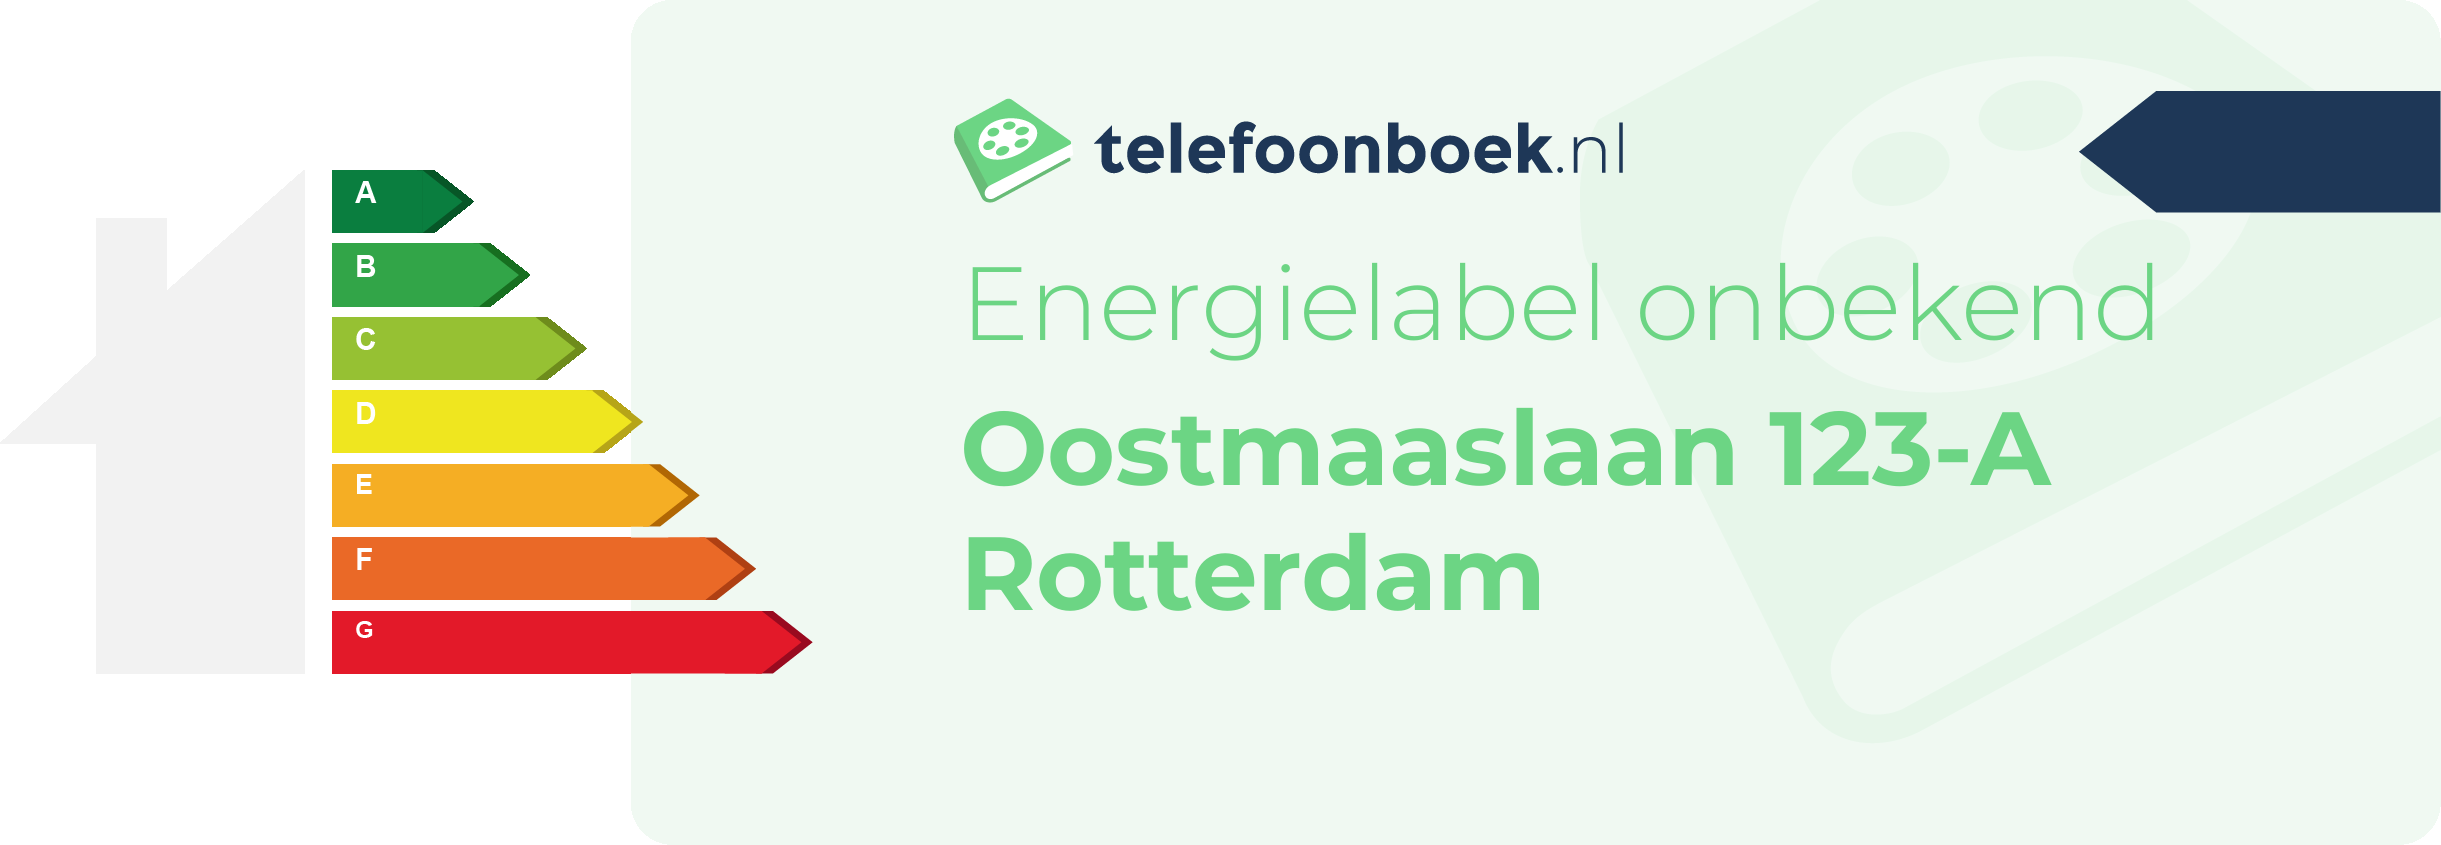 Energielabel Oostmaaslaan 123-A Rotterdam